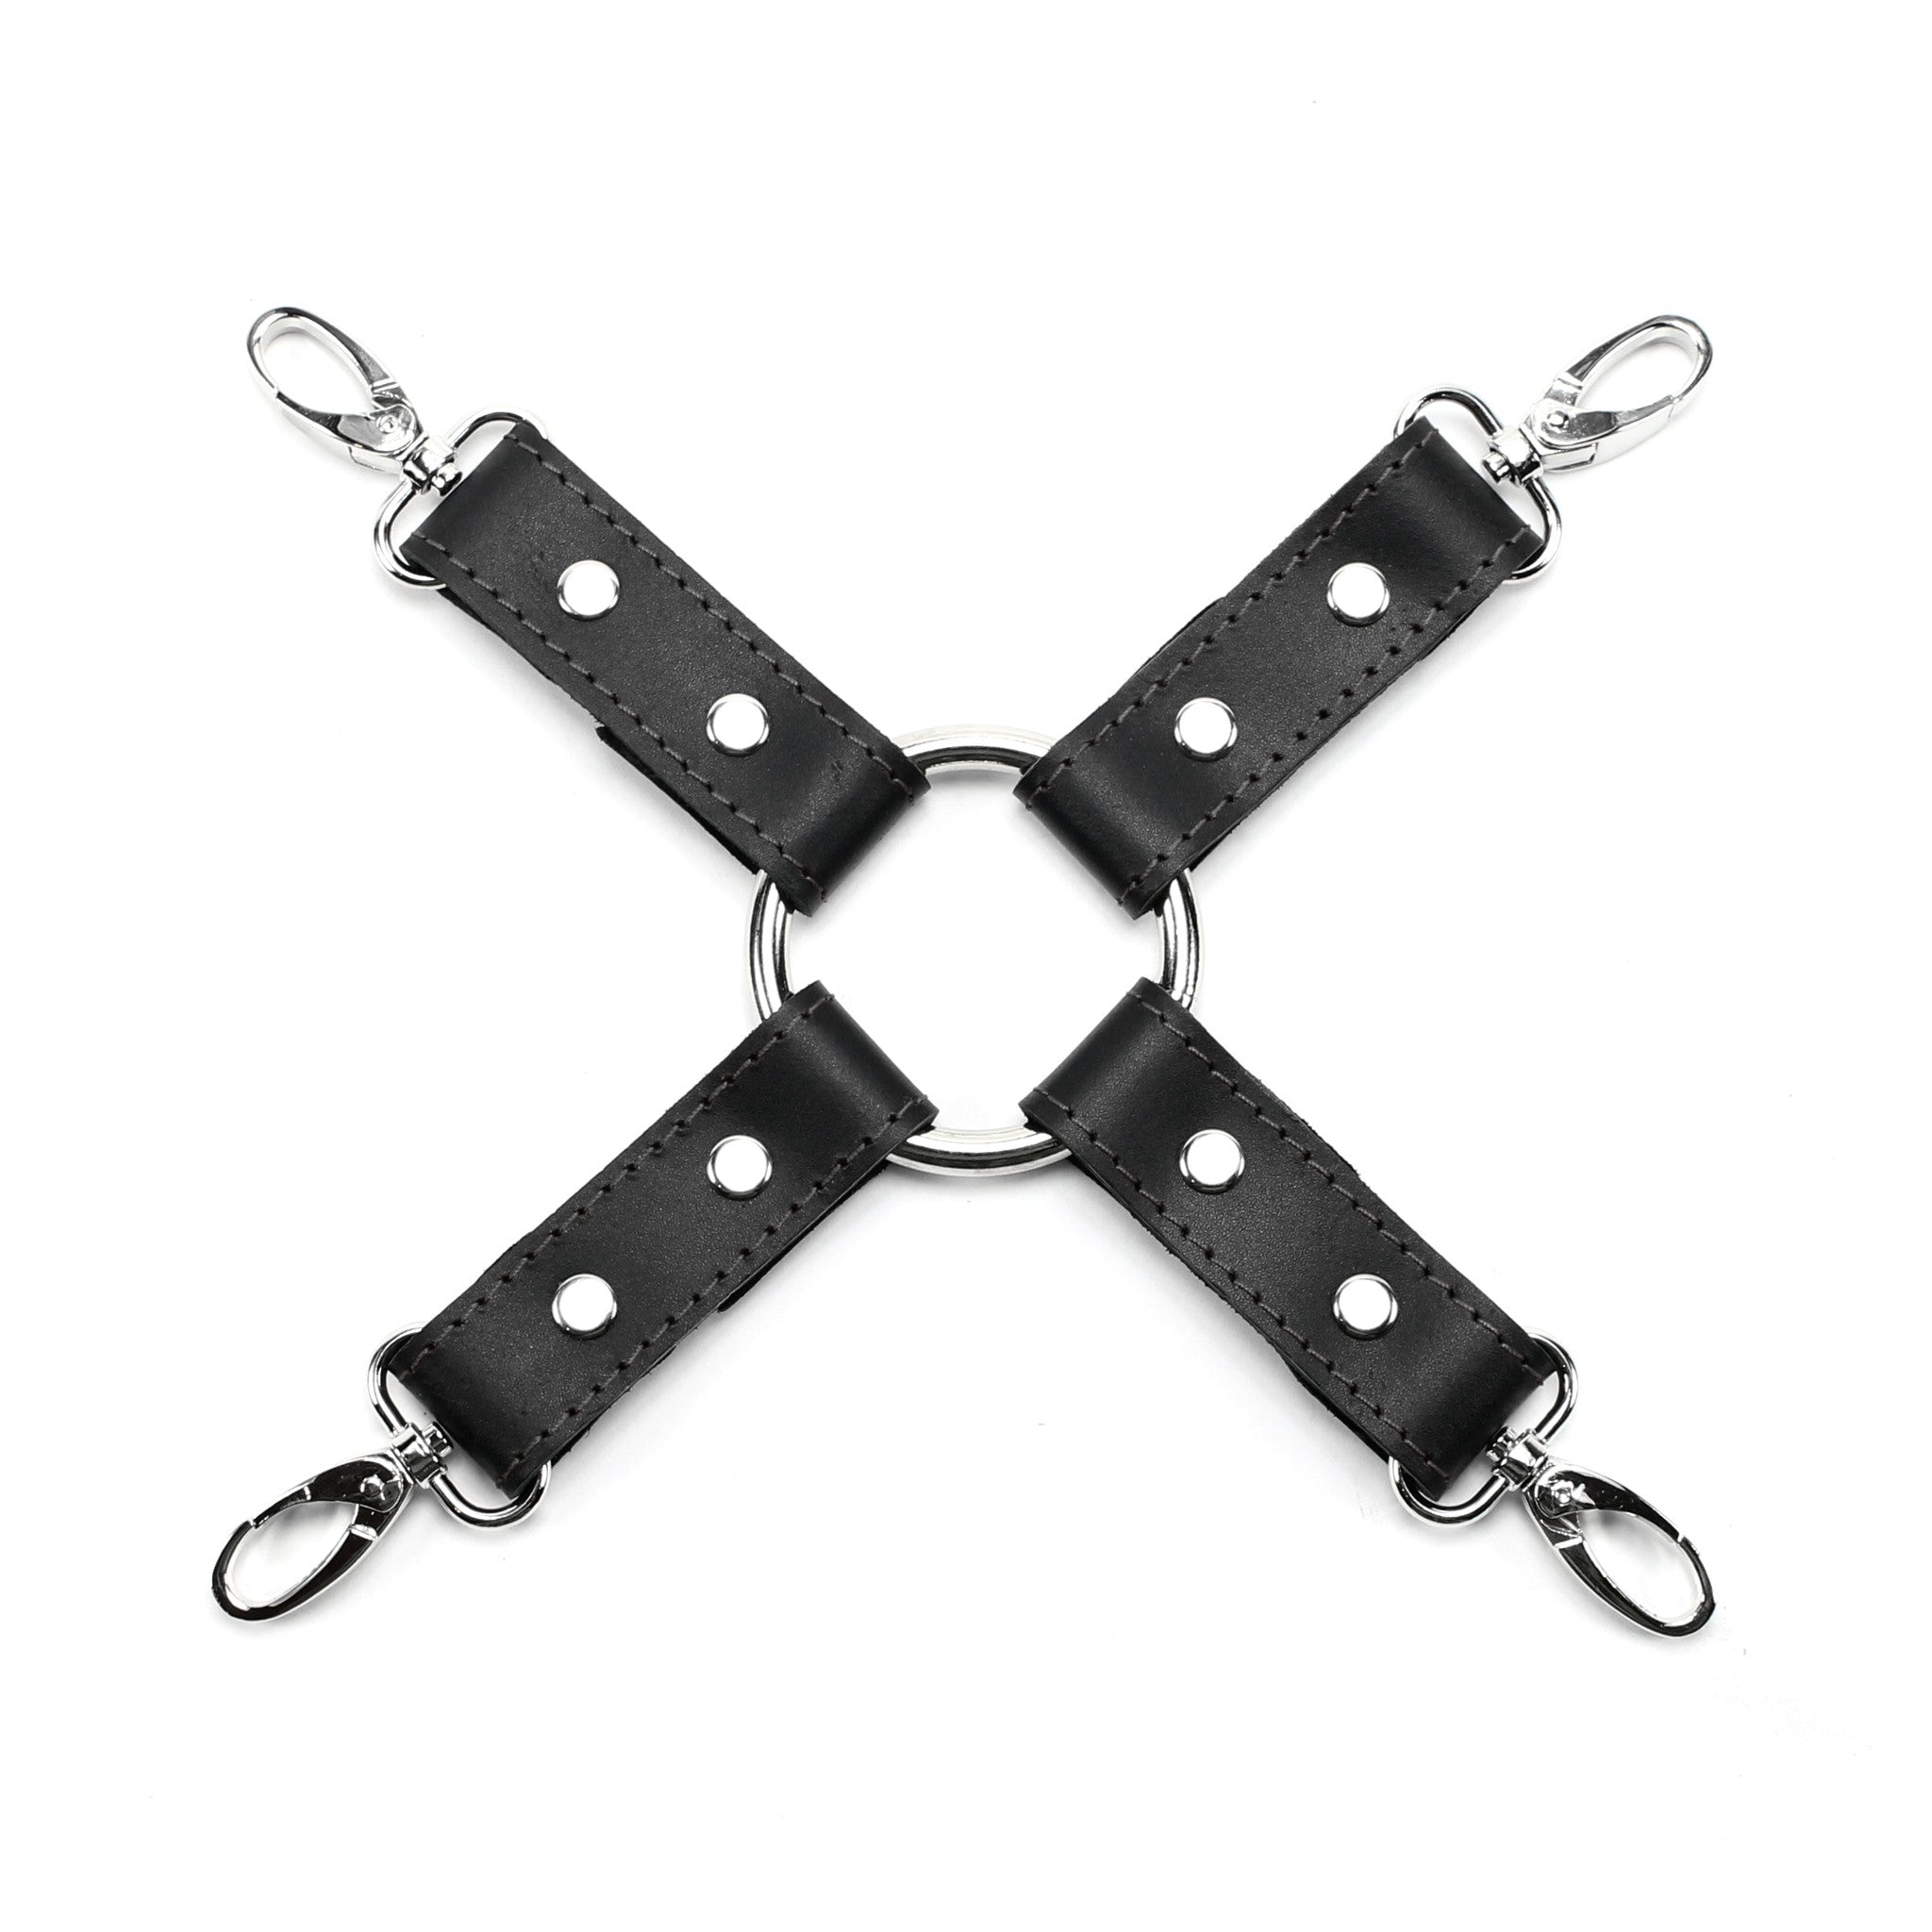 Grey and black leather 4-point bondage hogtie